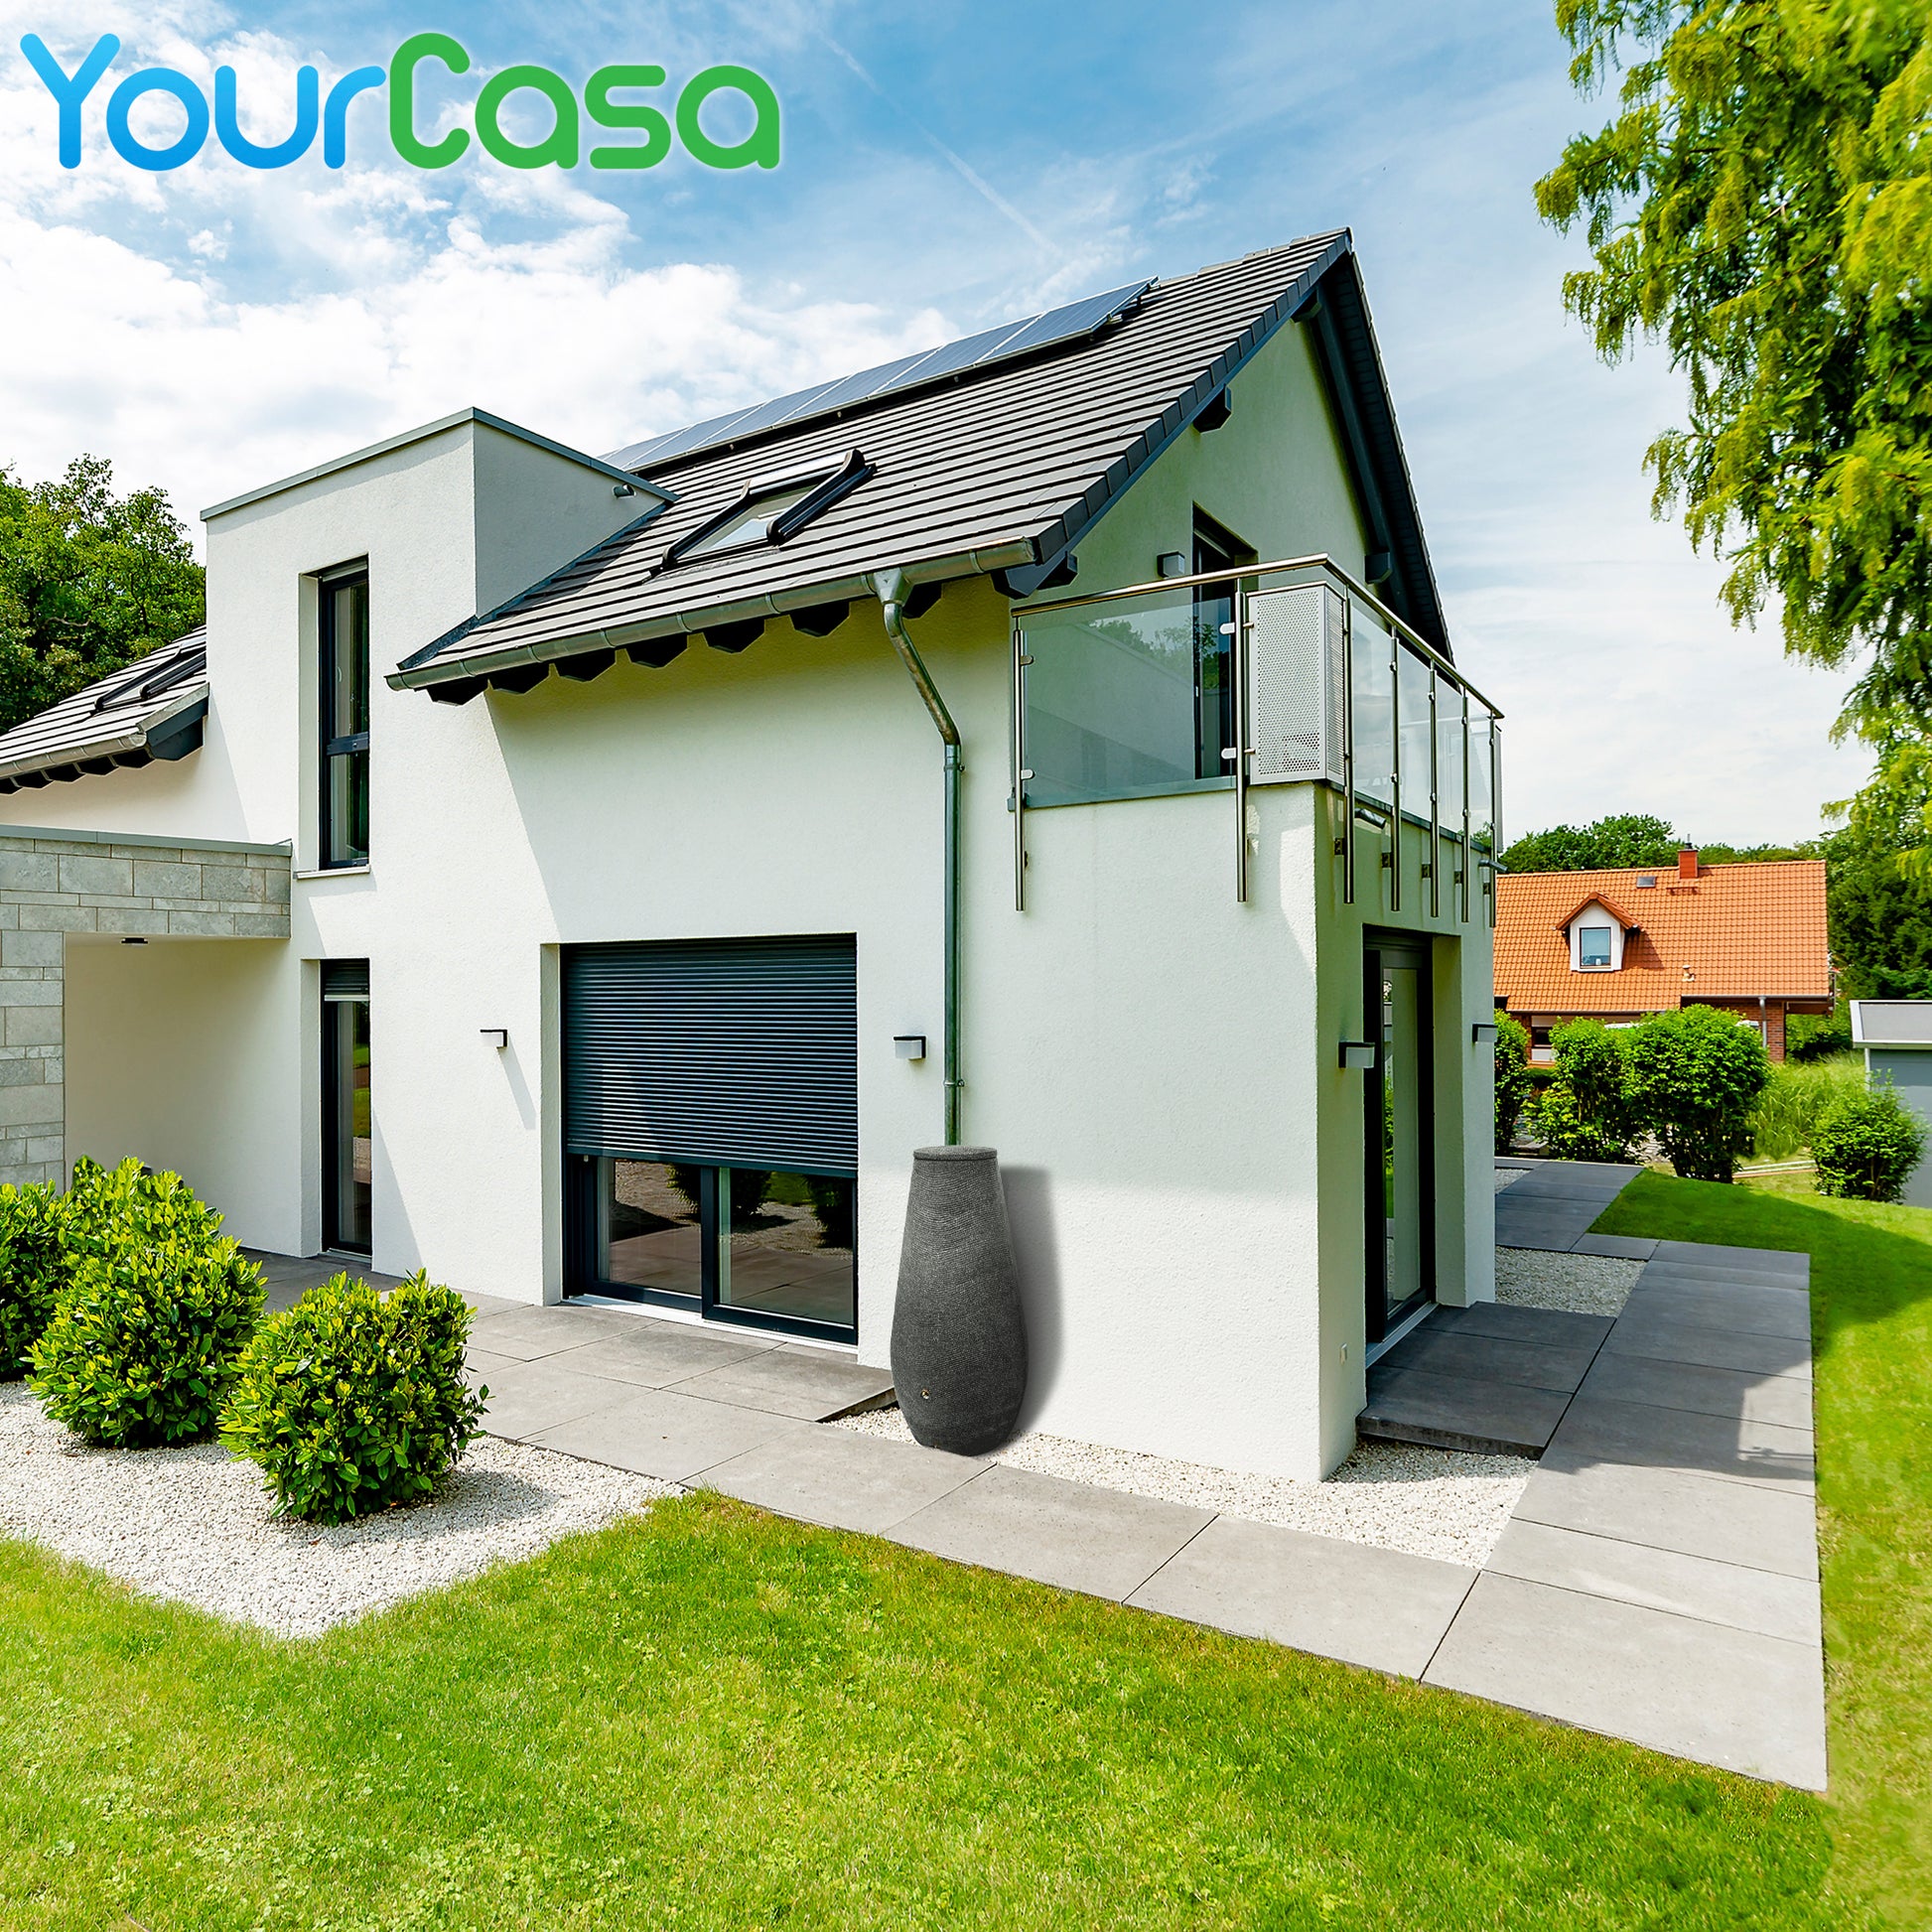 Ein Haus mit einer YourCasa Regentonne 200 Liter [EcoDrop] mit Metallgewinde und Deckel - Regenfass Frostsicher aus Kunststoff - Regenwassertonne - Regenwassertank Garten auf dem Dach.